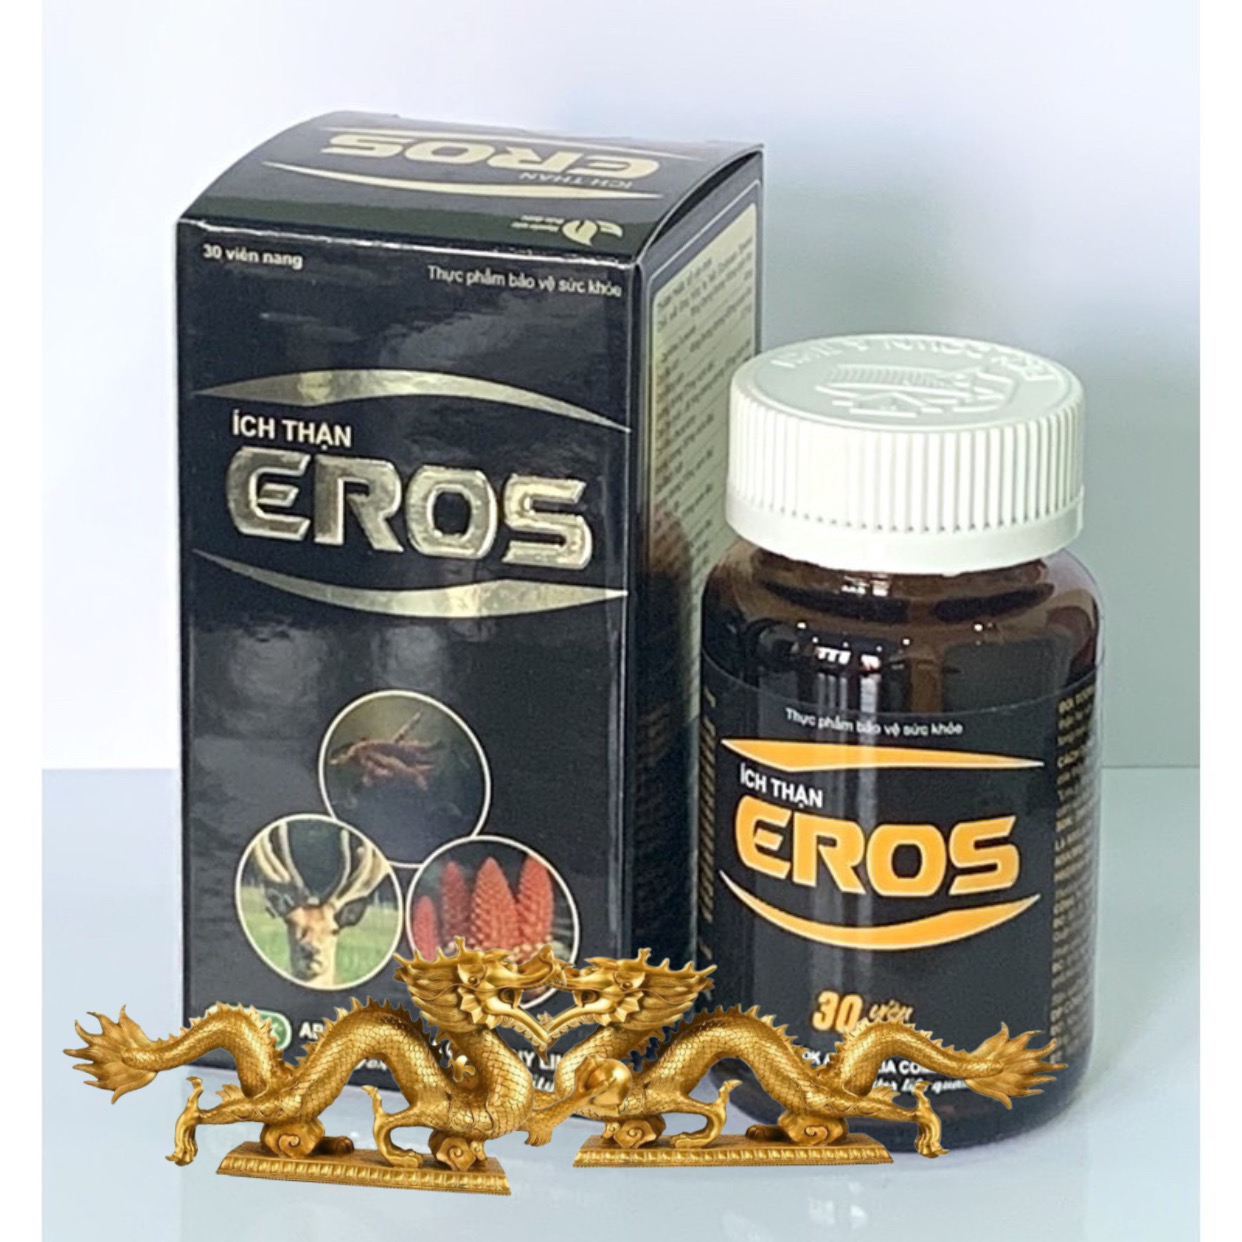 ￼ÍCH THẬN EROS - Hộp 30 Viên -tăng cường sinh lý, phục hồi chức năng thận, tiểu đêm, đau lưng, Vinaphar